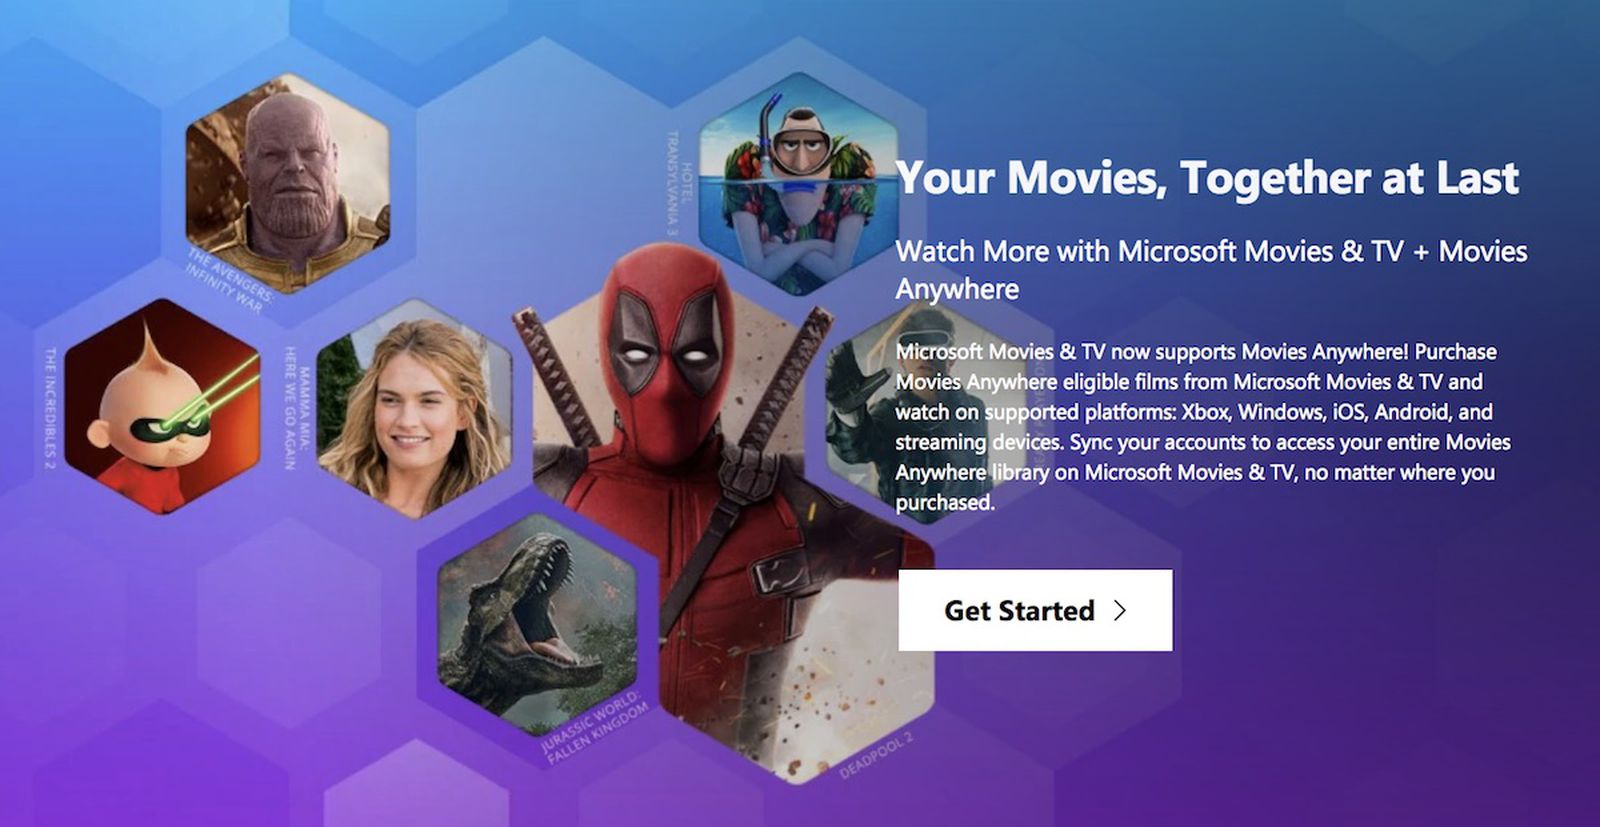 Microsoft movie. Movies anywhere. Get movies. Your movies 1